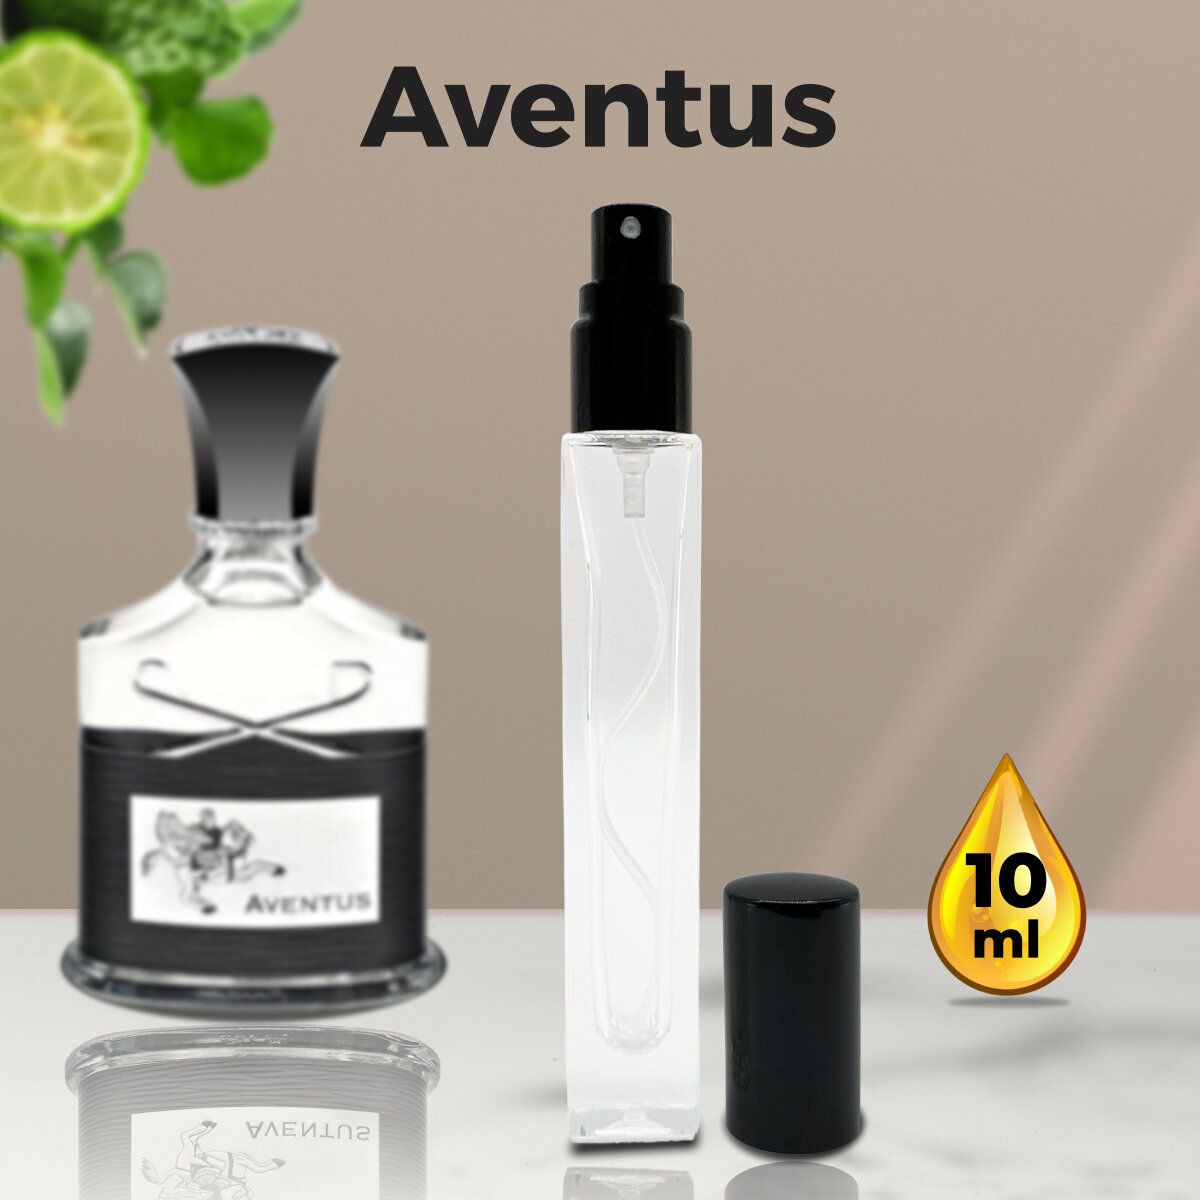 Gratus Parfum Aventuc духи мужские масляные 10 мл (спрей) + подарок